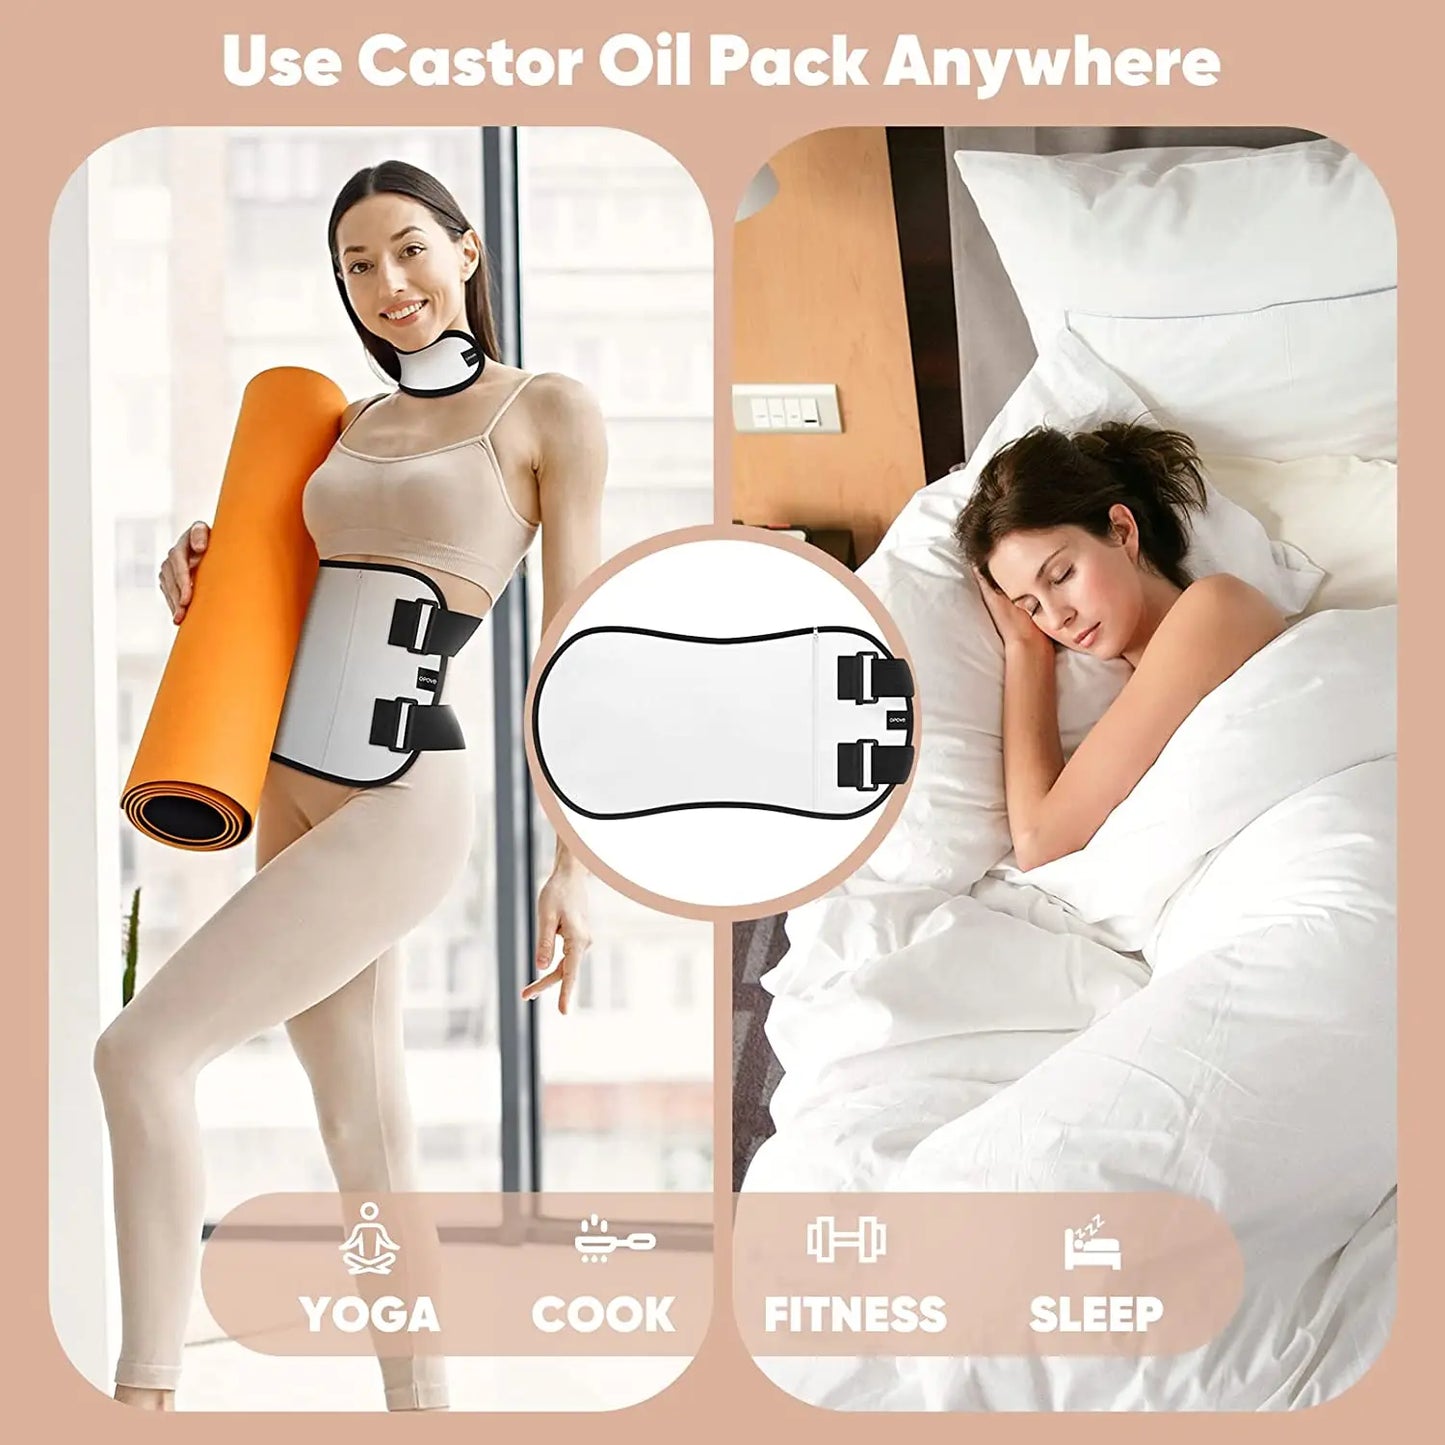 Castor Oil Pack Wrap -2 Pack Organic Cotton Flannel Castor Oil Packs,Reusable Kit for Liver Detox, Fibroids Thyroid Neck